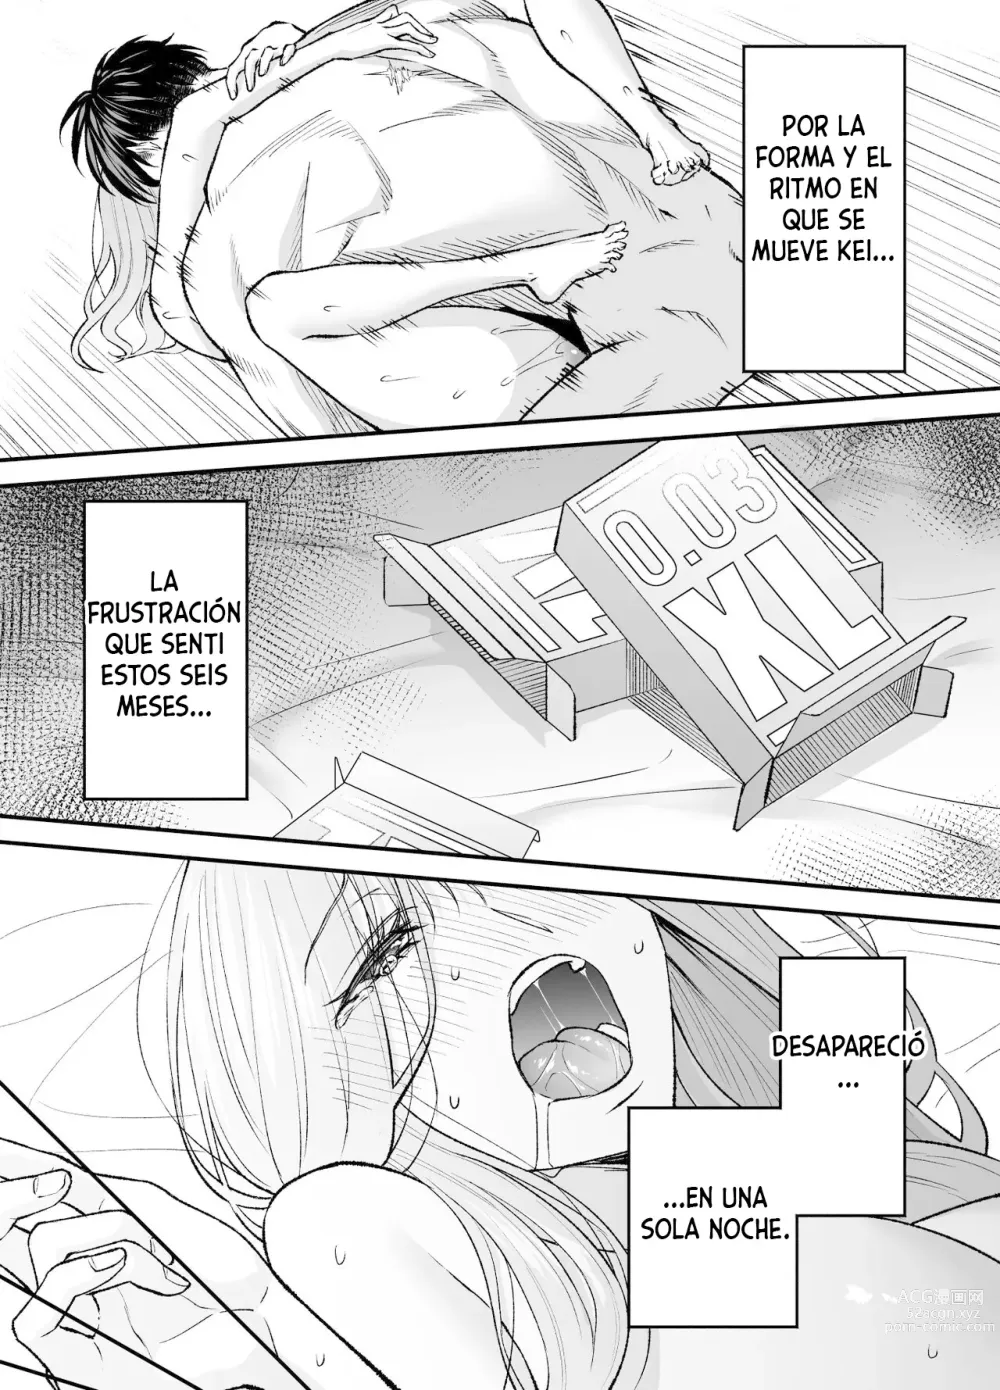 Page 100 of manga Un caballero, transmigrado al japón moderno